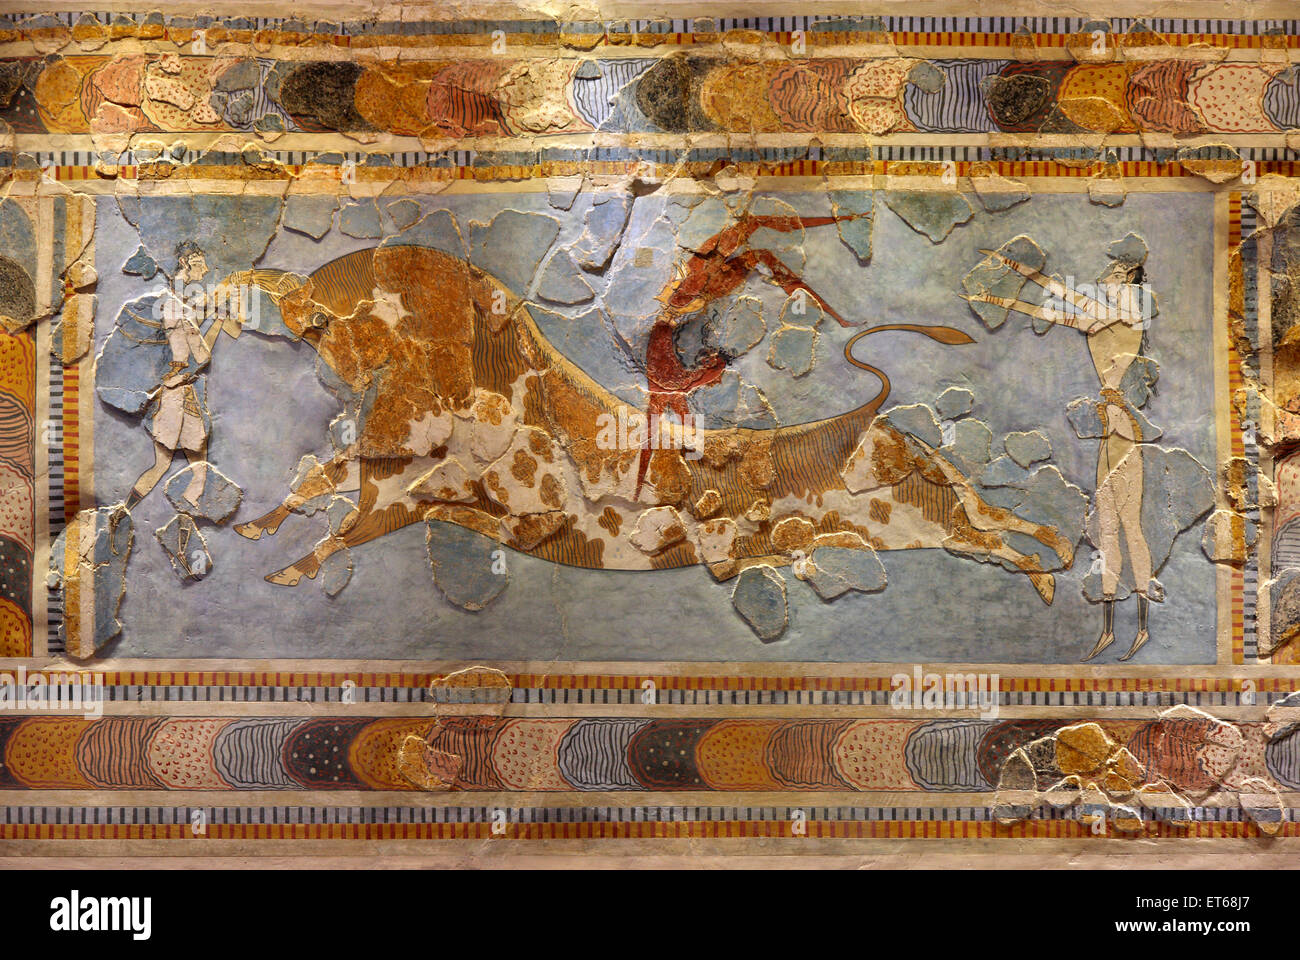 Le Taureau-leaping fresco du Palais Minoen de Knossos, dans le musée archéologique d'Héraklion, Crète, Grèce Banque D'Images